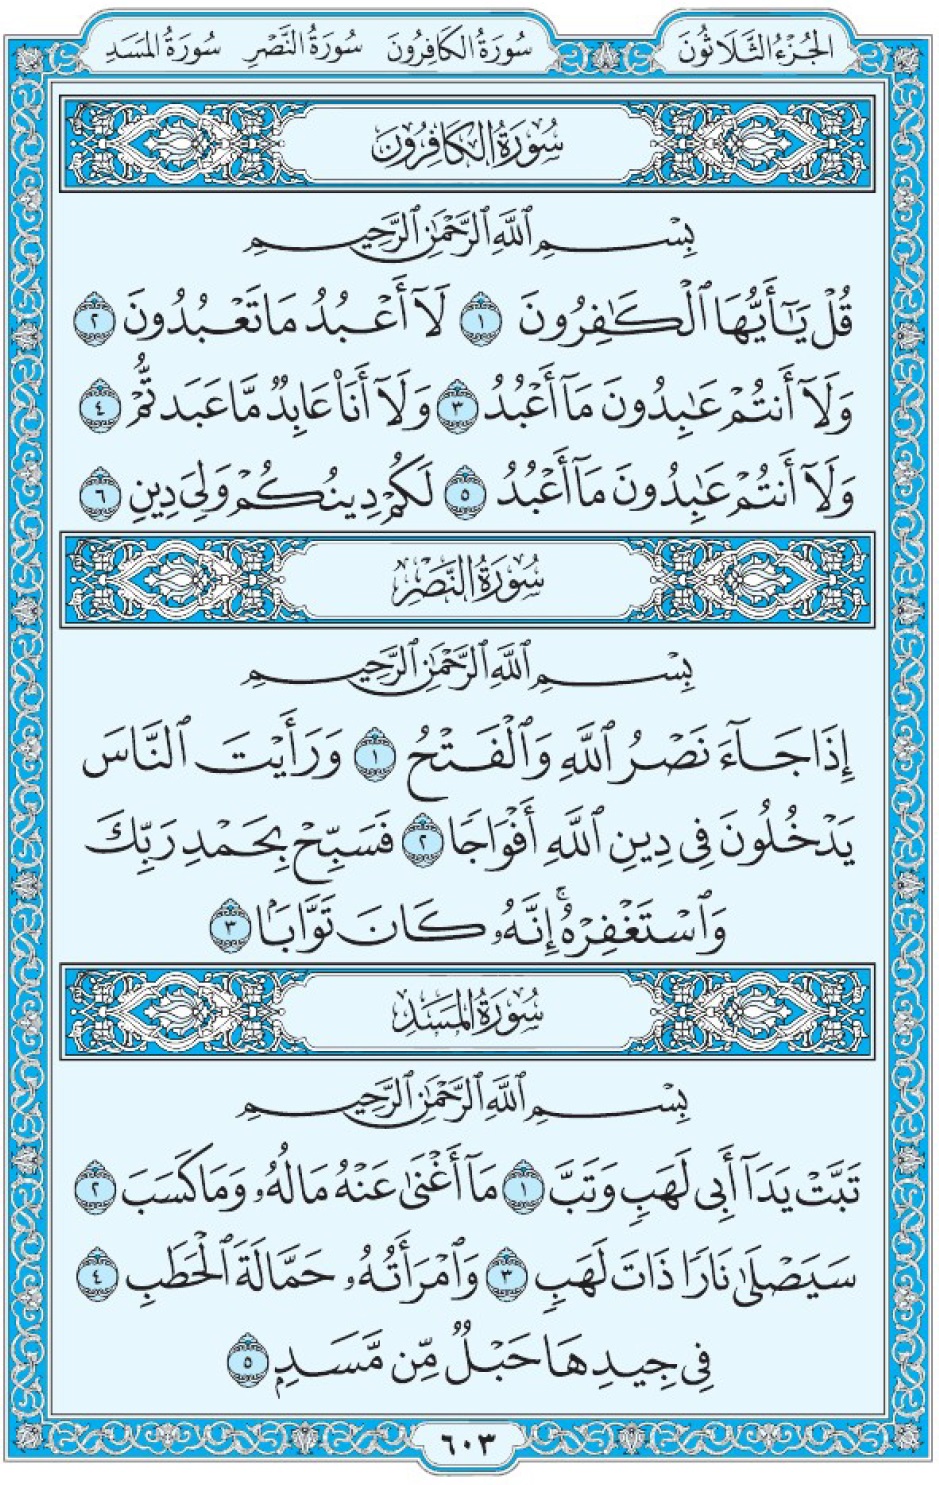 Коран Мединский мусхаф страница 603, суры 109 аль-Кяфирун, 110 ан-Наср, 111 аль-Масад